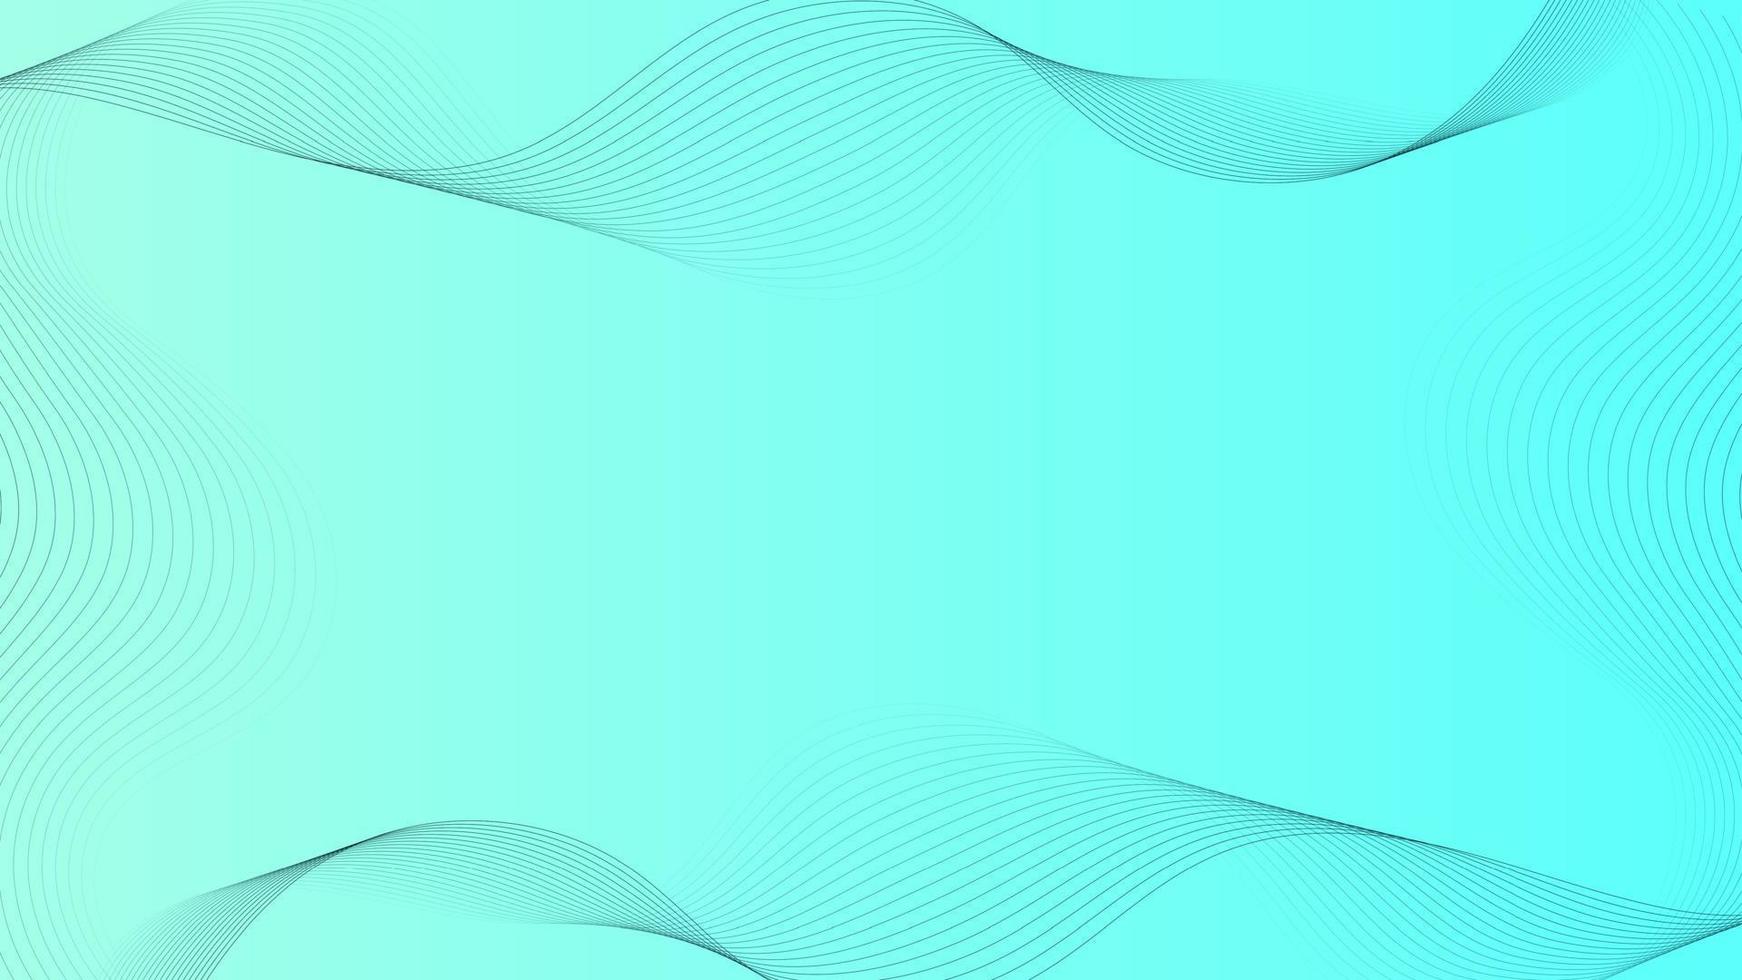 lignes noires sur fond abstrait bleu avec des particules fluides. concept de technologie numérique future. illustration vectorielle. vecteur